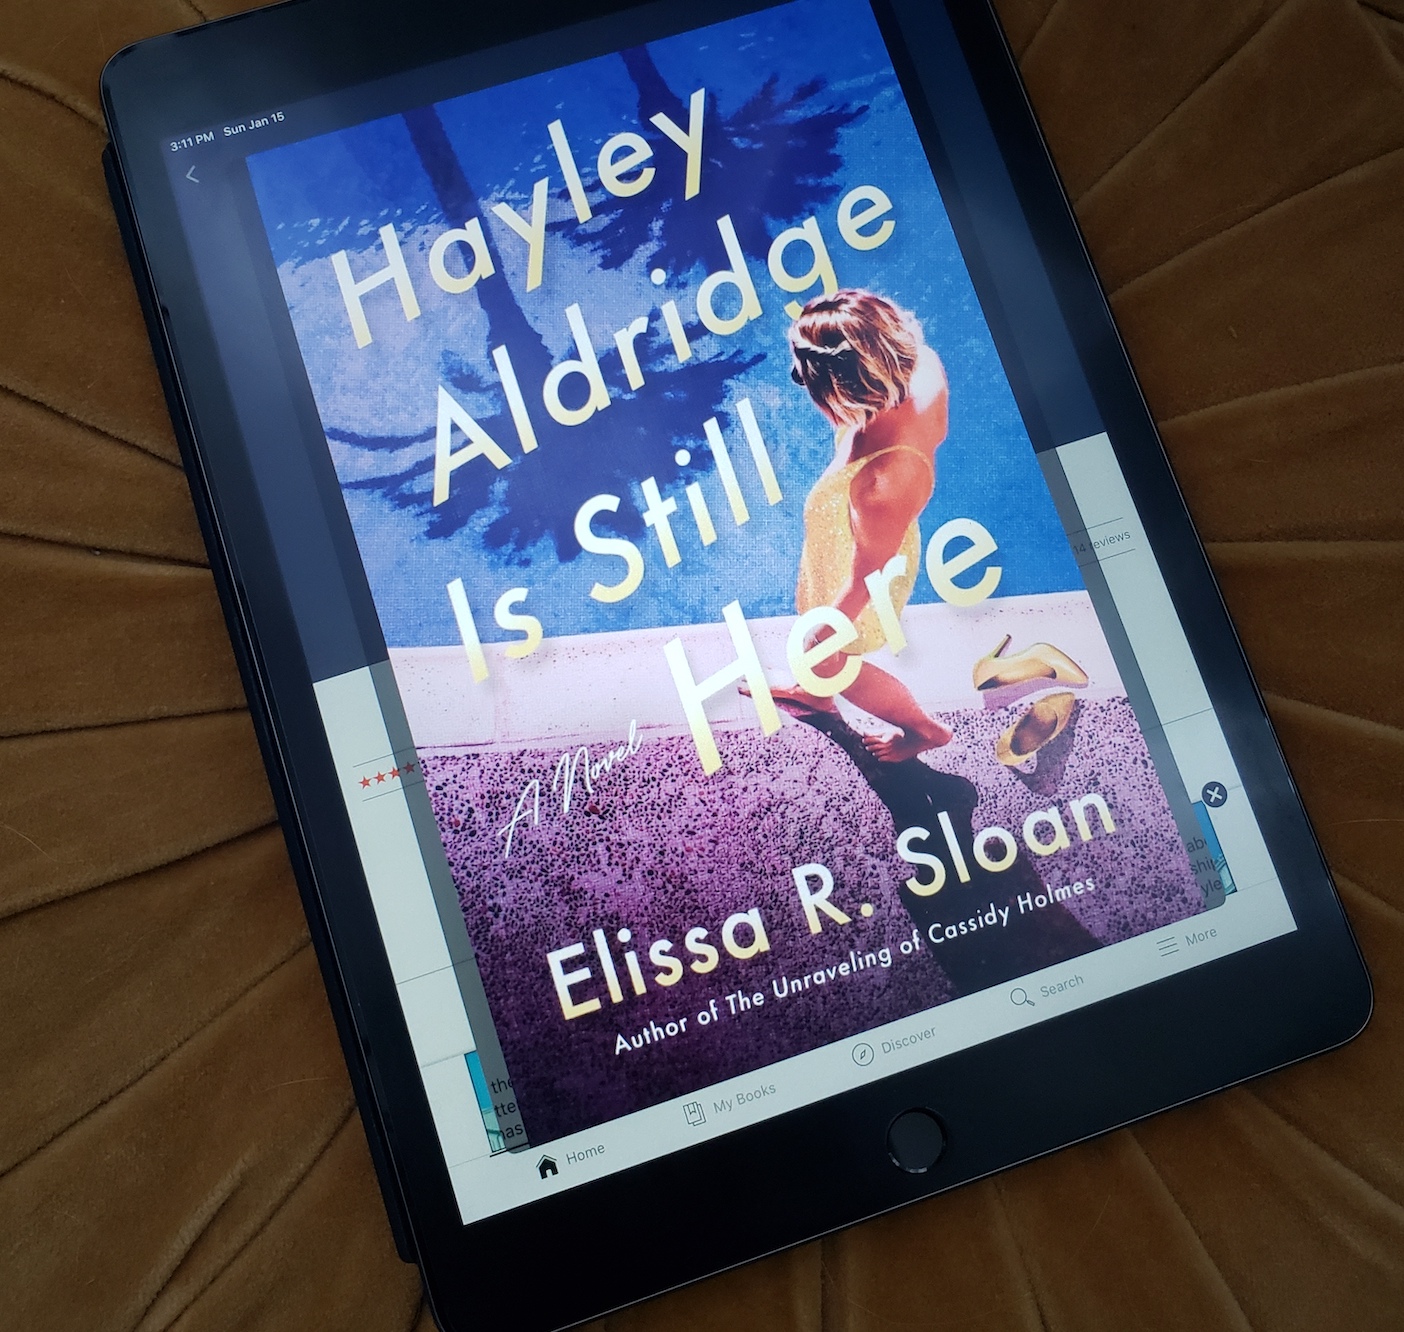 114: Hayley Aldridge is Still Here by Elissa R. Sloan